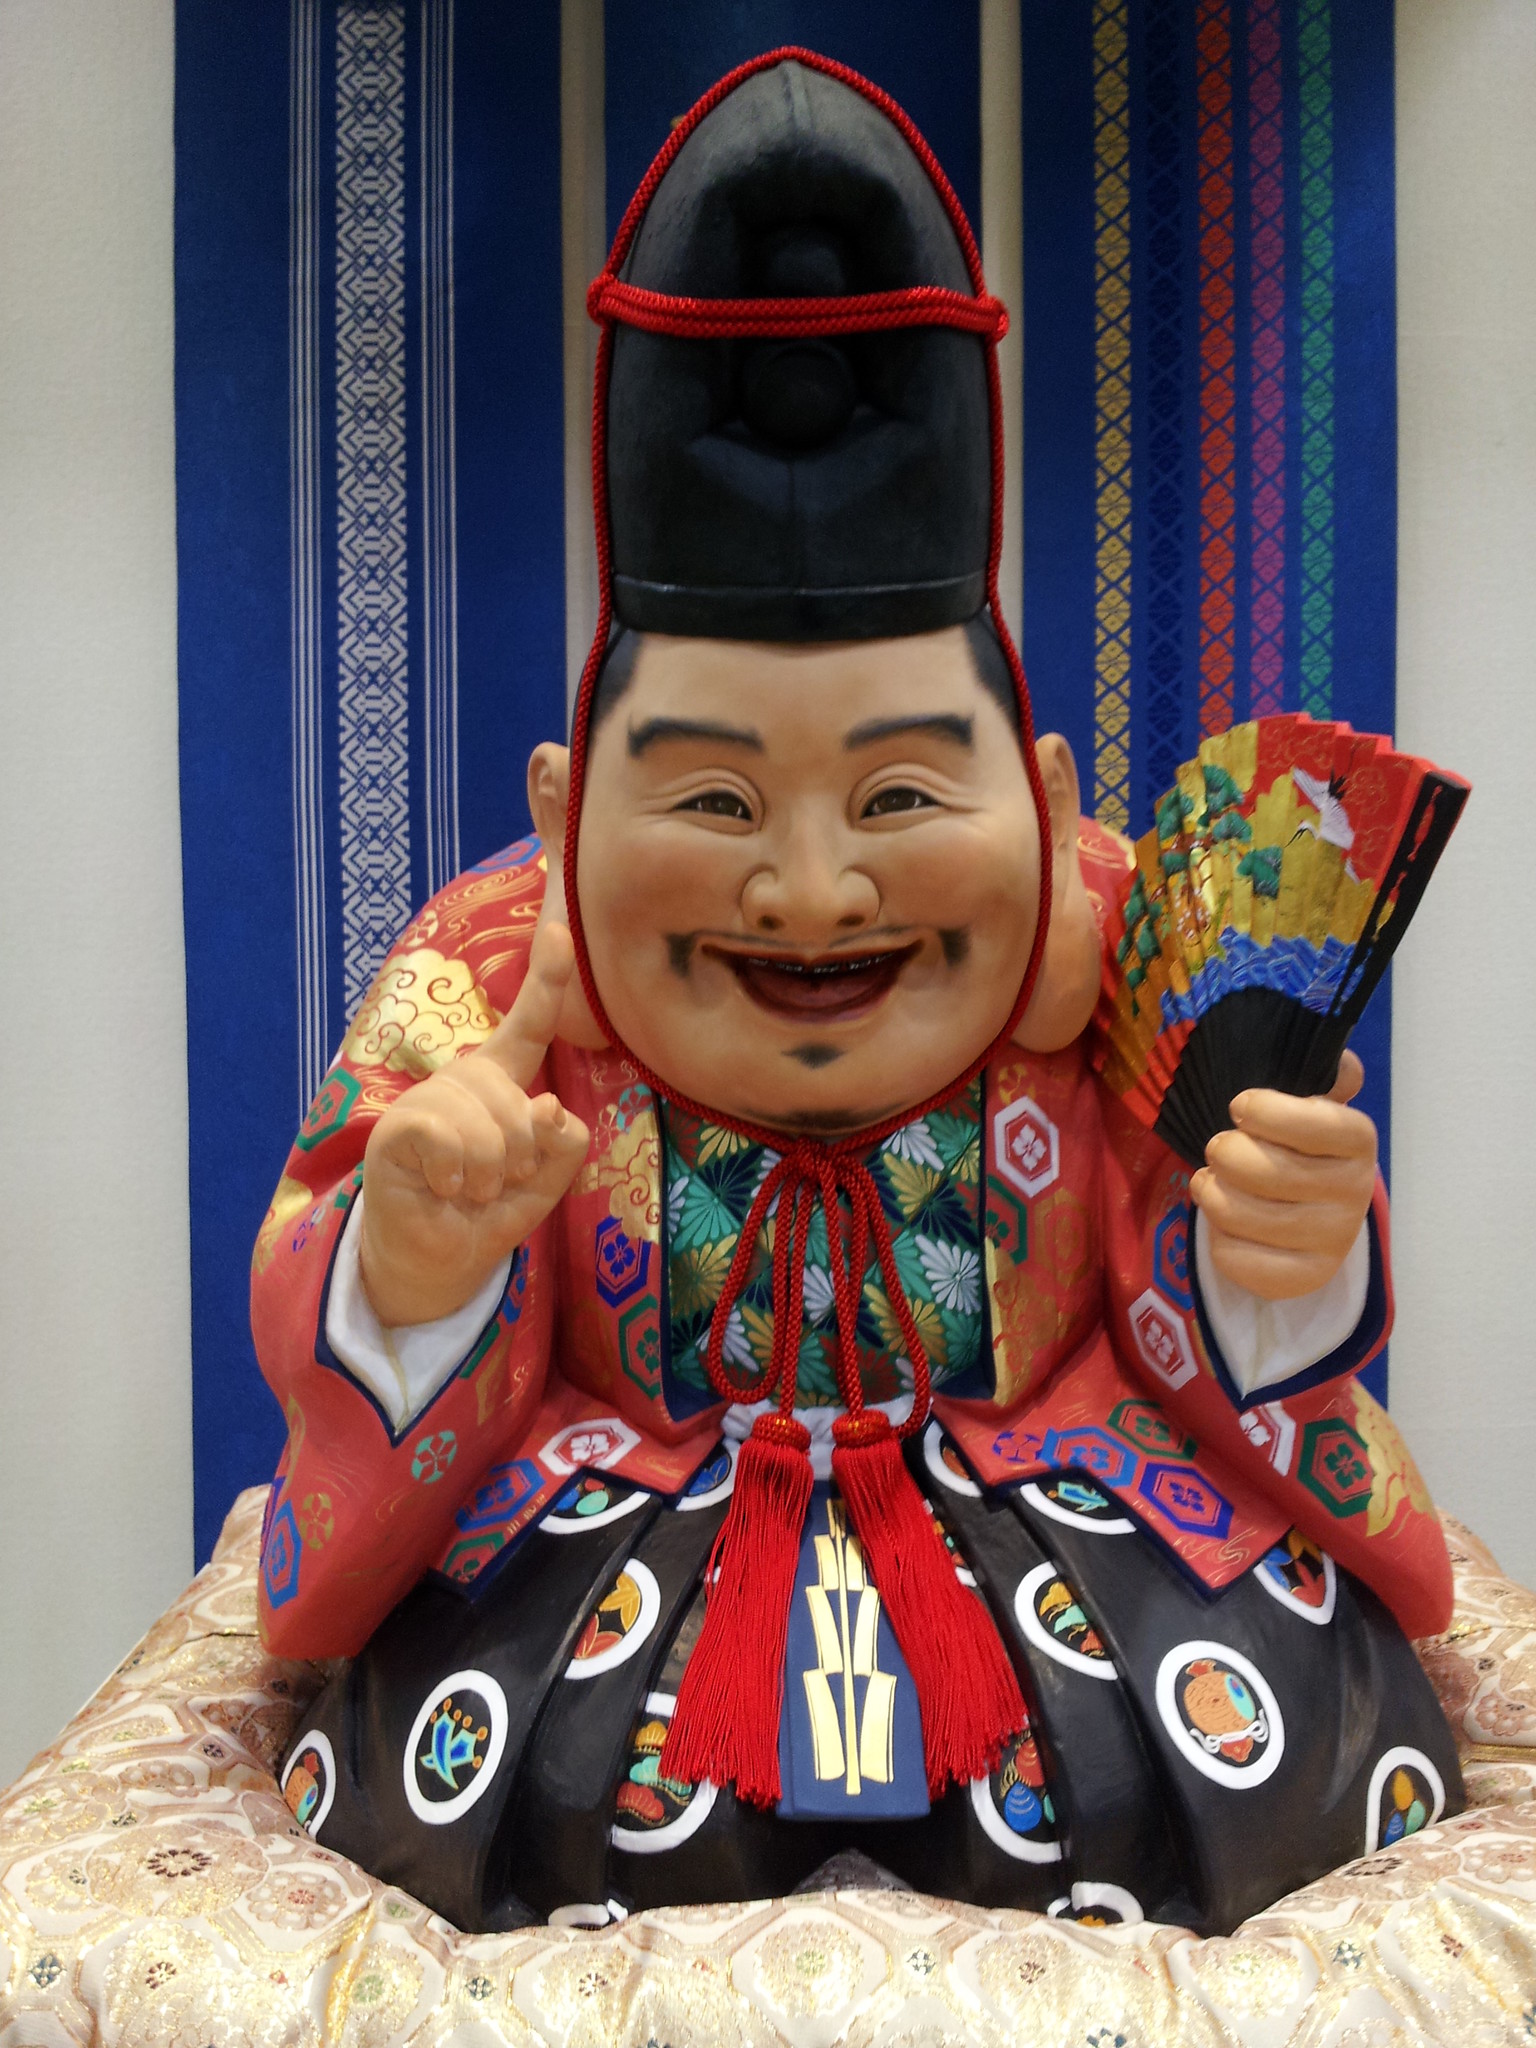 博多織、博多人形など福岡・博多の伝統的工芸品の今と昔、そして未来を